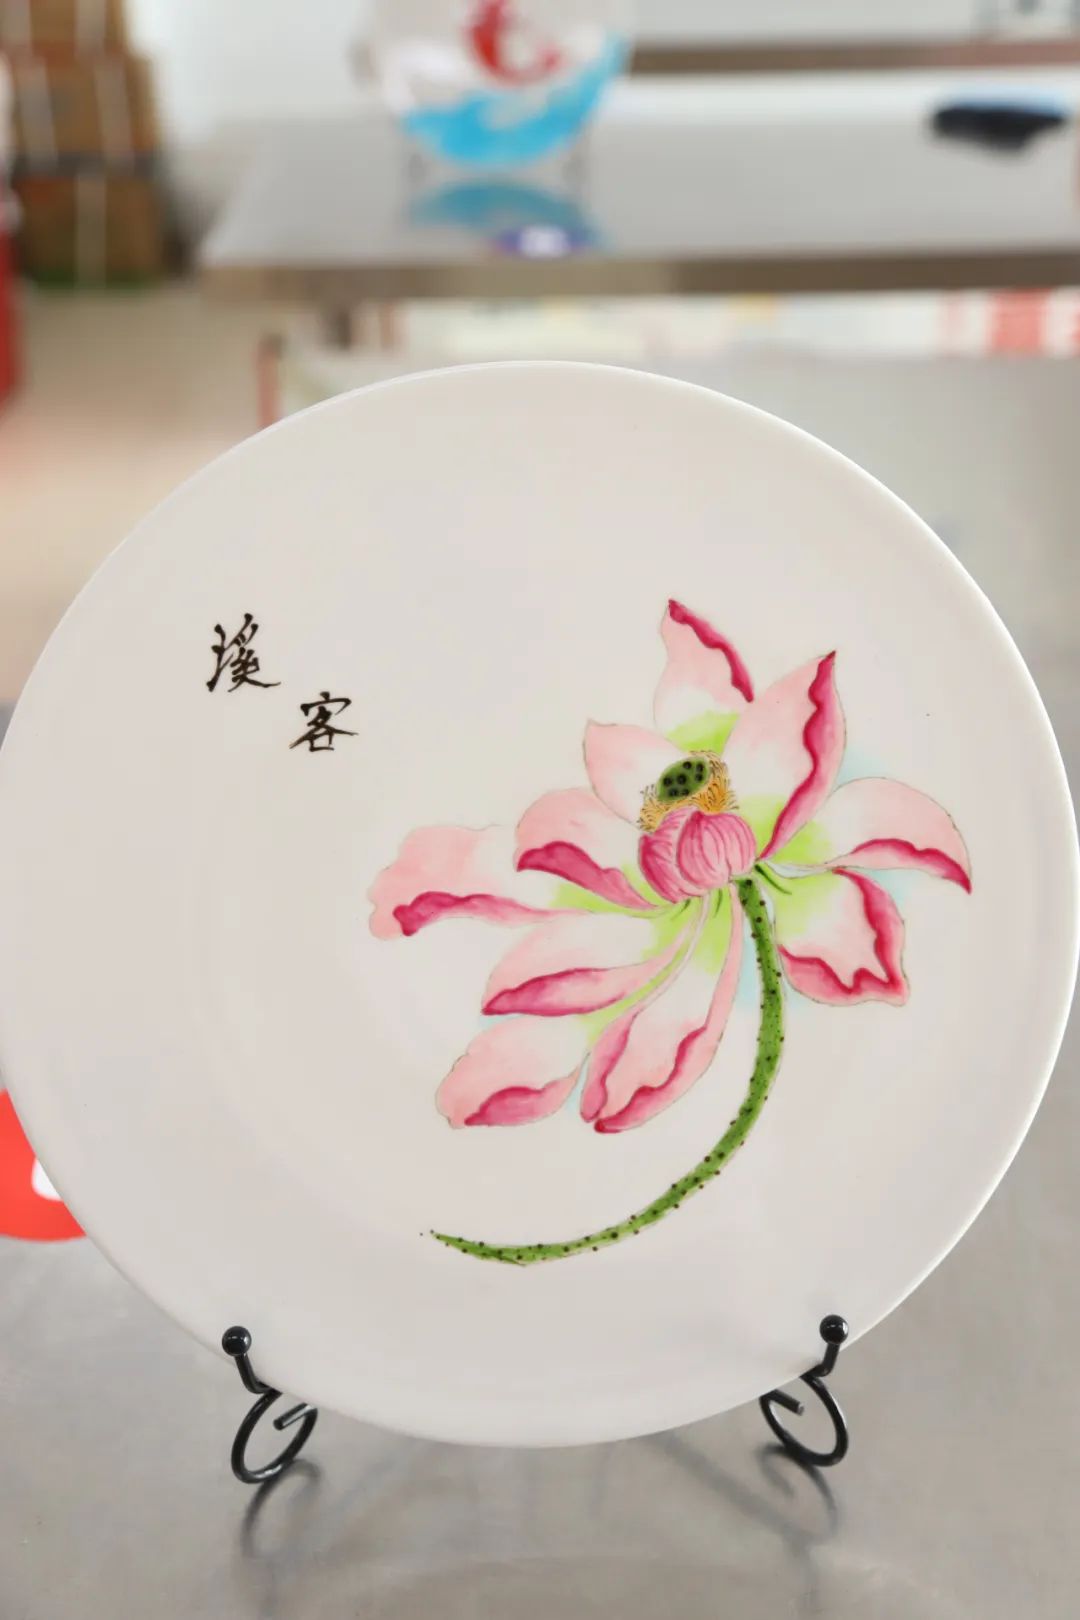 创意果酱画大赛,华南学子匠心描绘,尽展餐盘艺术魅力